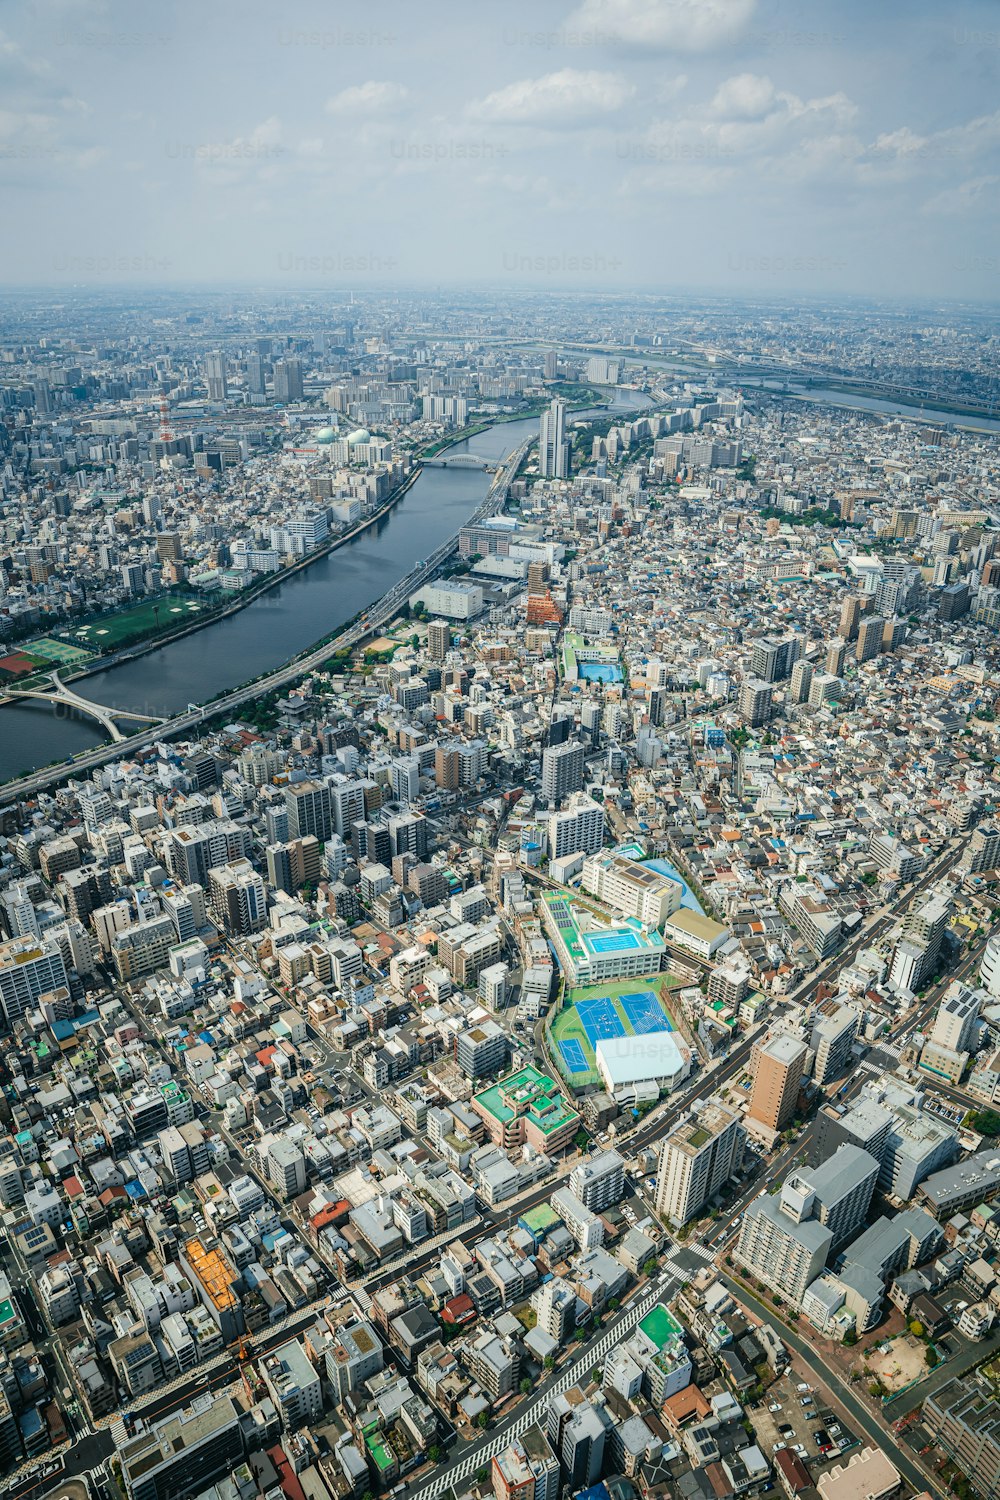 Una veduta aerea di una città attraversata da un fiume